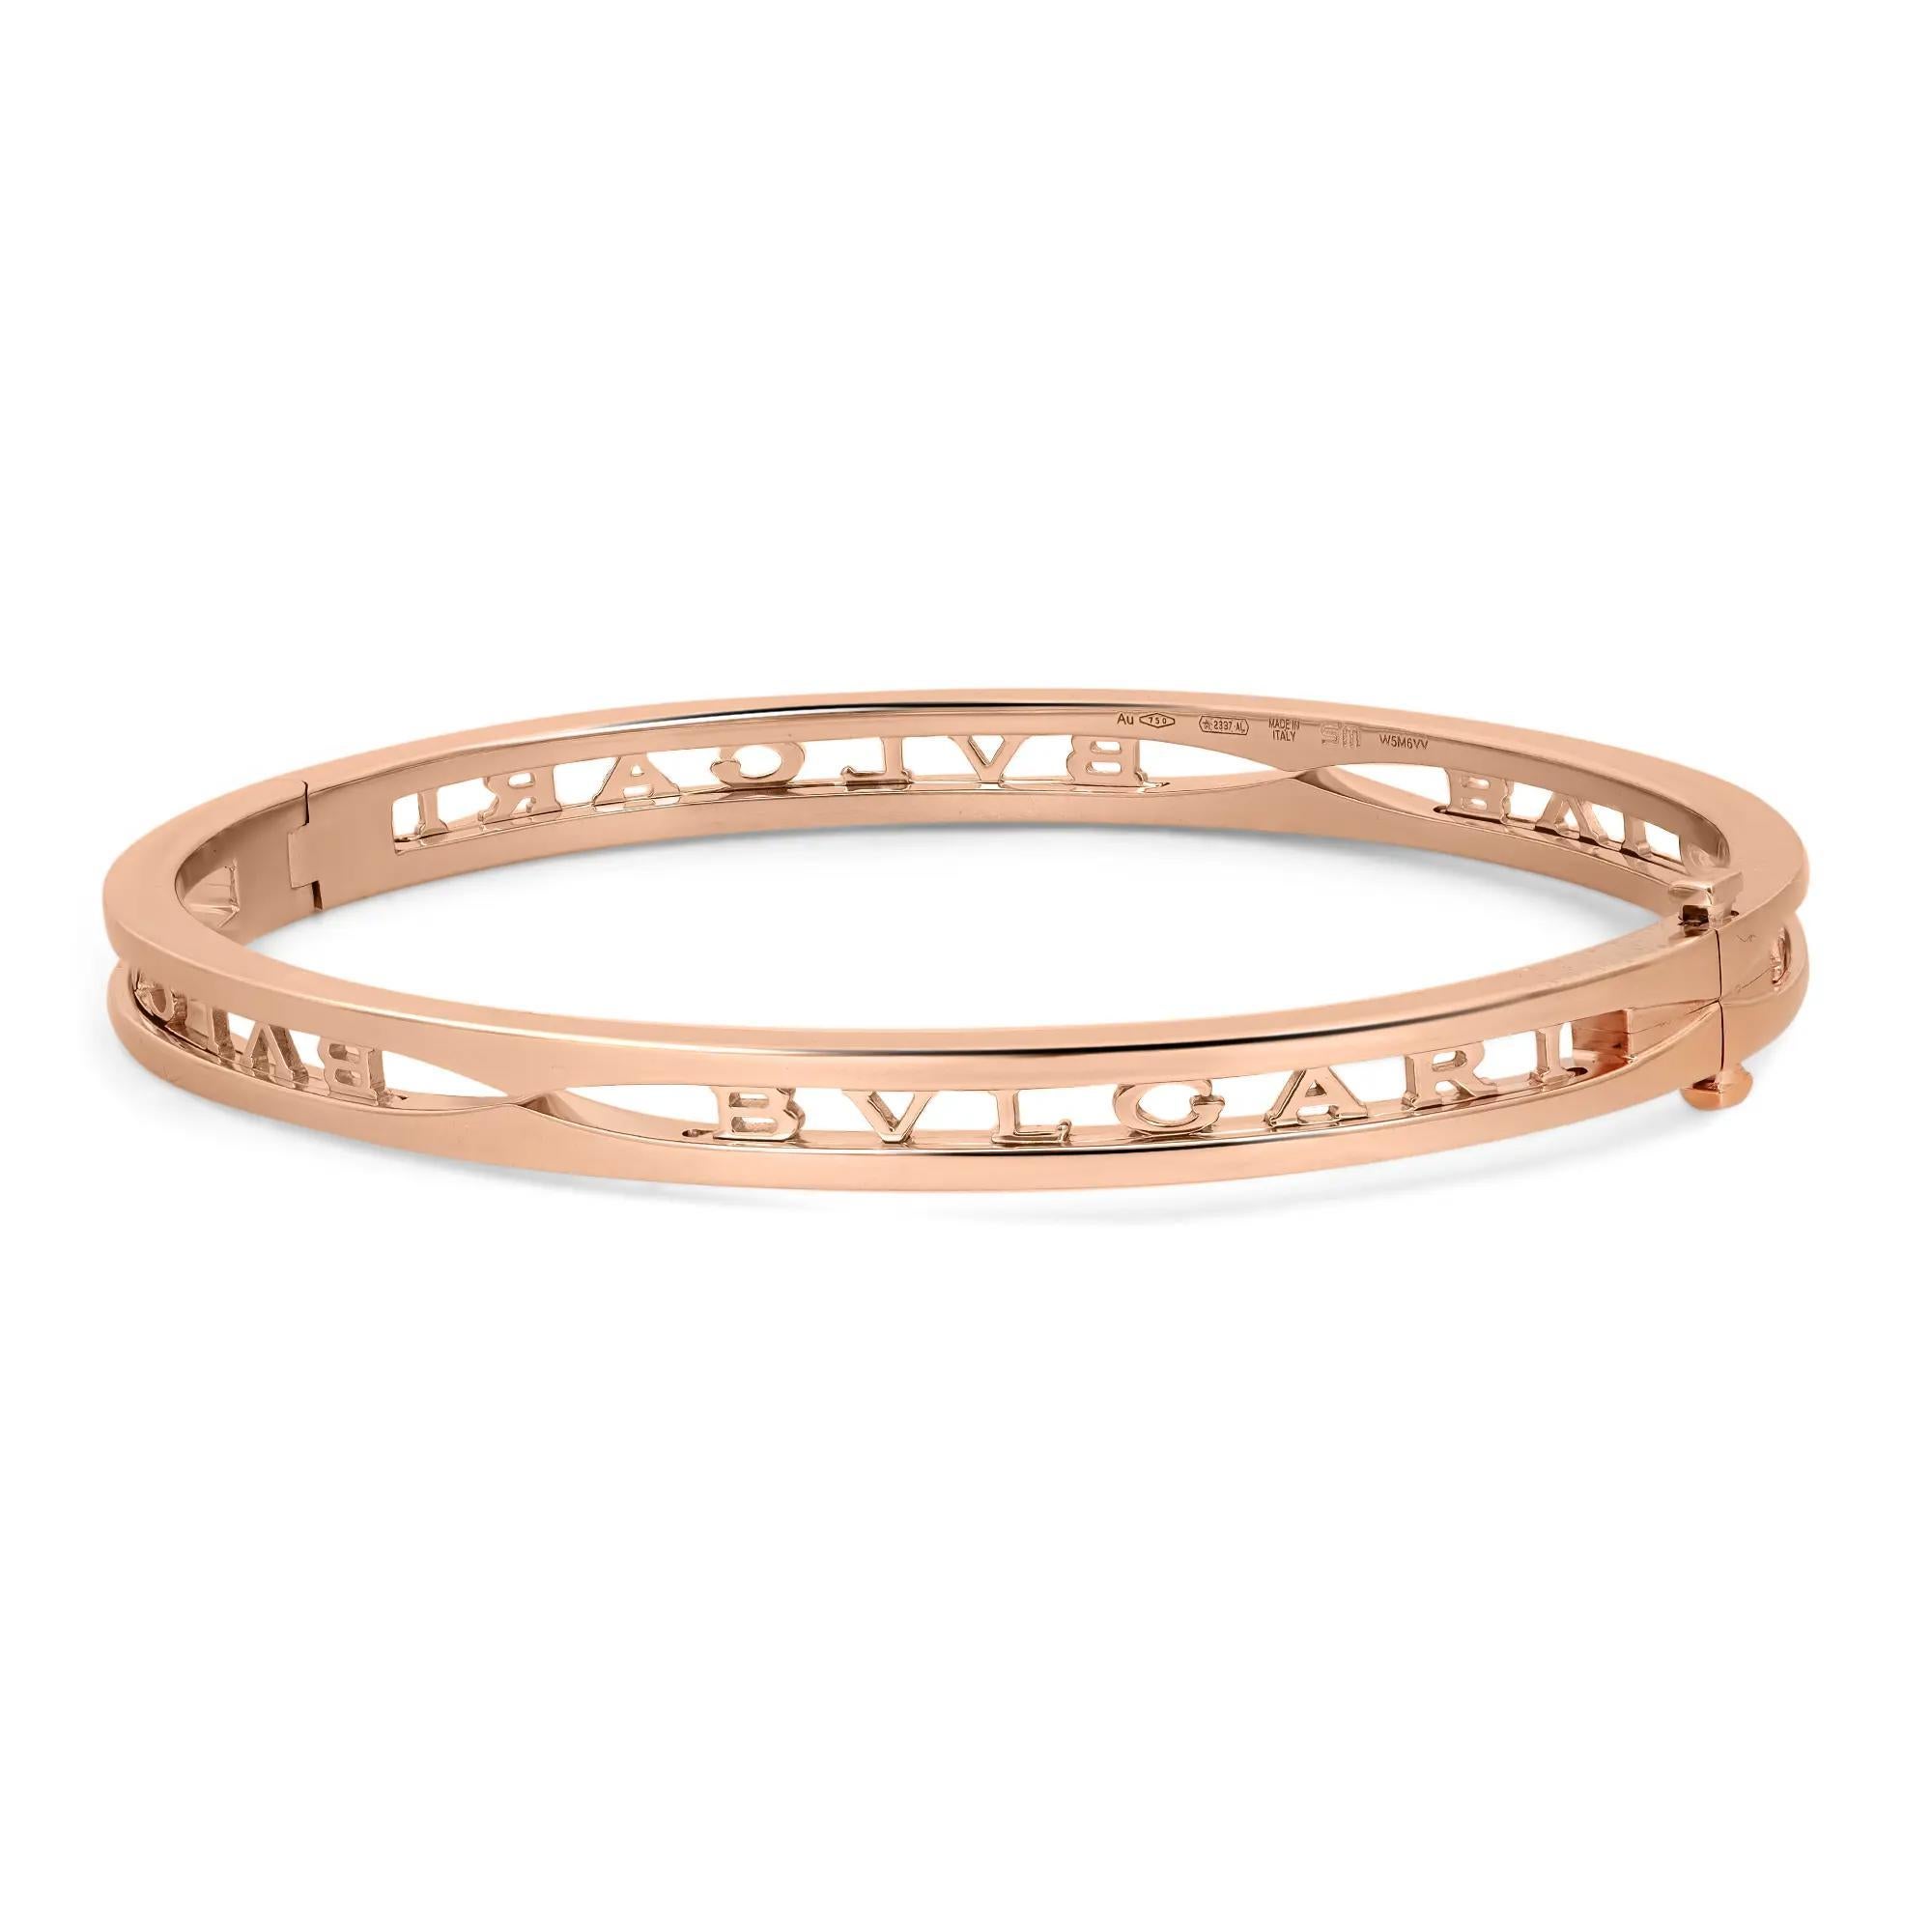 Audacieux et magnifique, ce bracelet est une véritable essence de l'esthétique joaillière. Réalisé en or rose 18 carats brillant. Ce bracelet présente une forme ovale avec le logo Bvlgari découpé. Super empilable et facile à porter. Taille : Petit